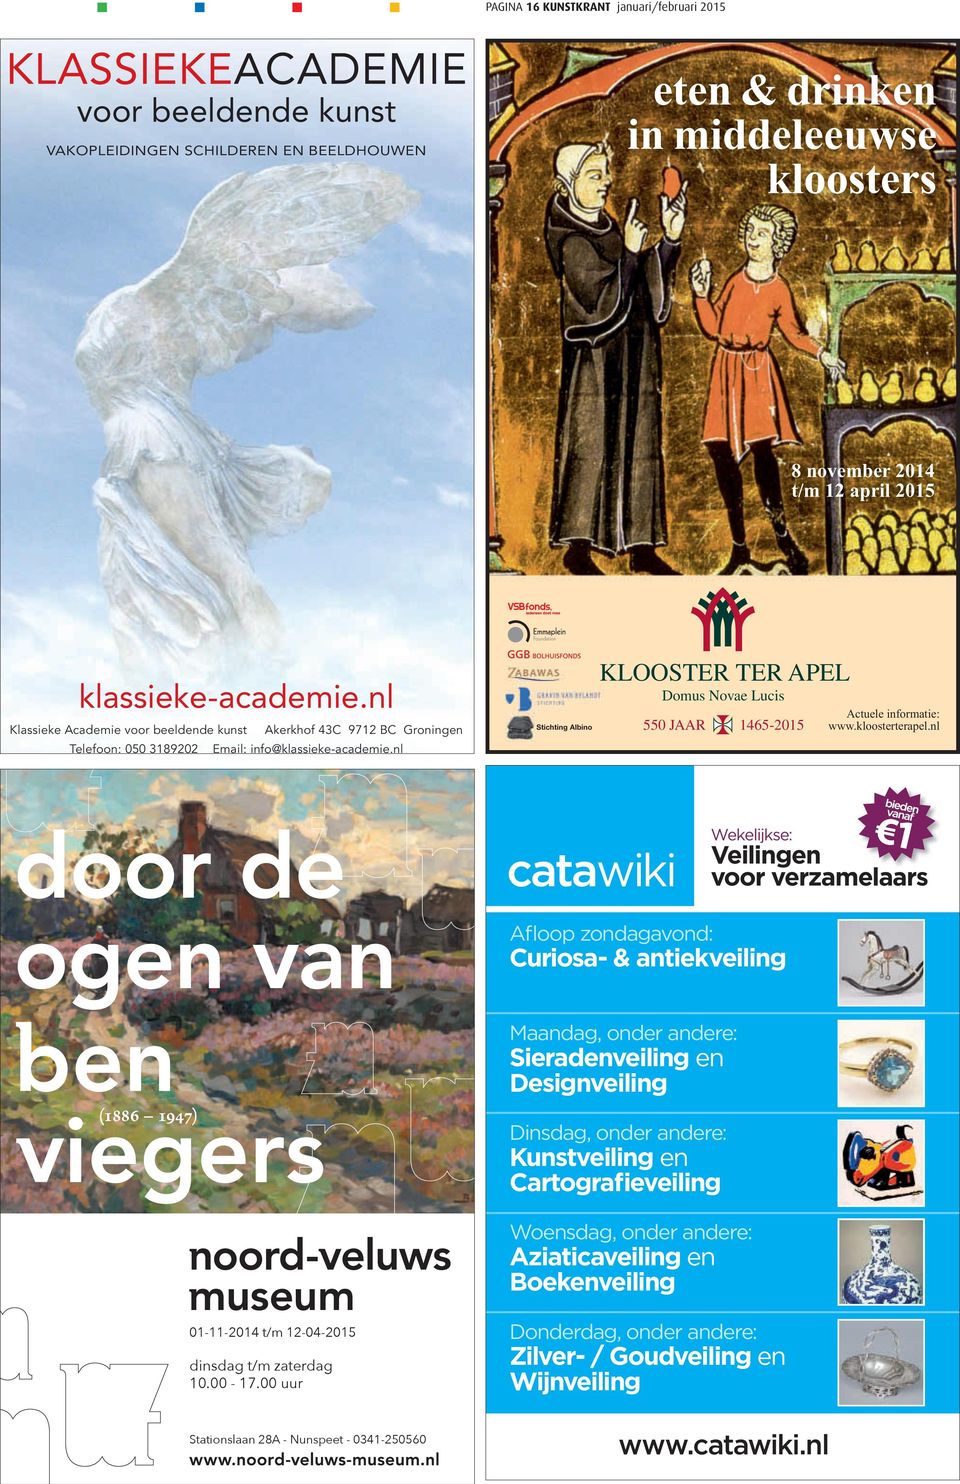 nl Stichting Albino KLOOSTER TER APEL Domus Novae Lucis 550 JAAR 1465-2015 Actuele informatie: www.kloosterterapel.